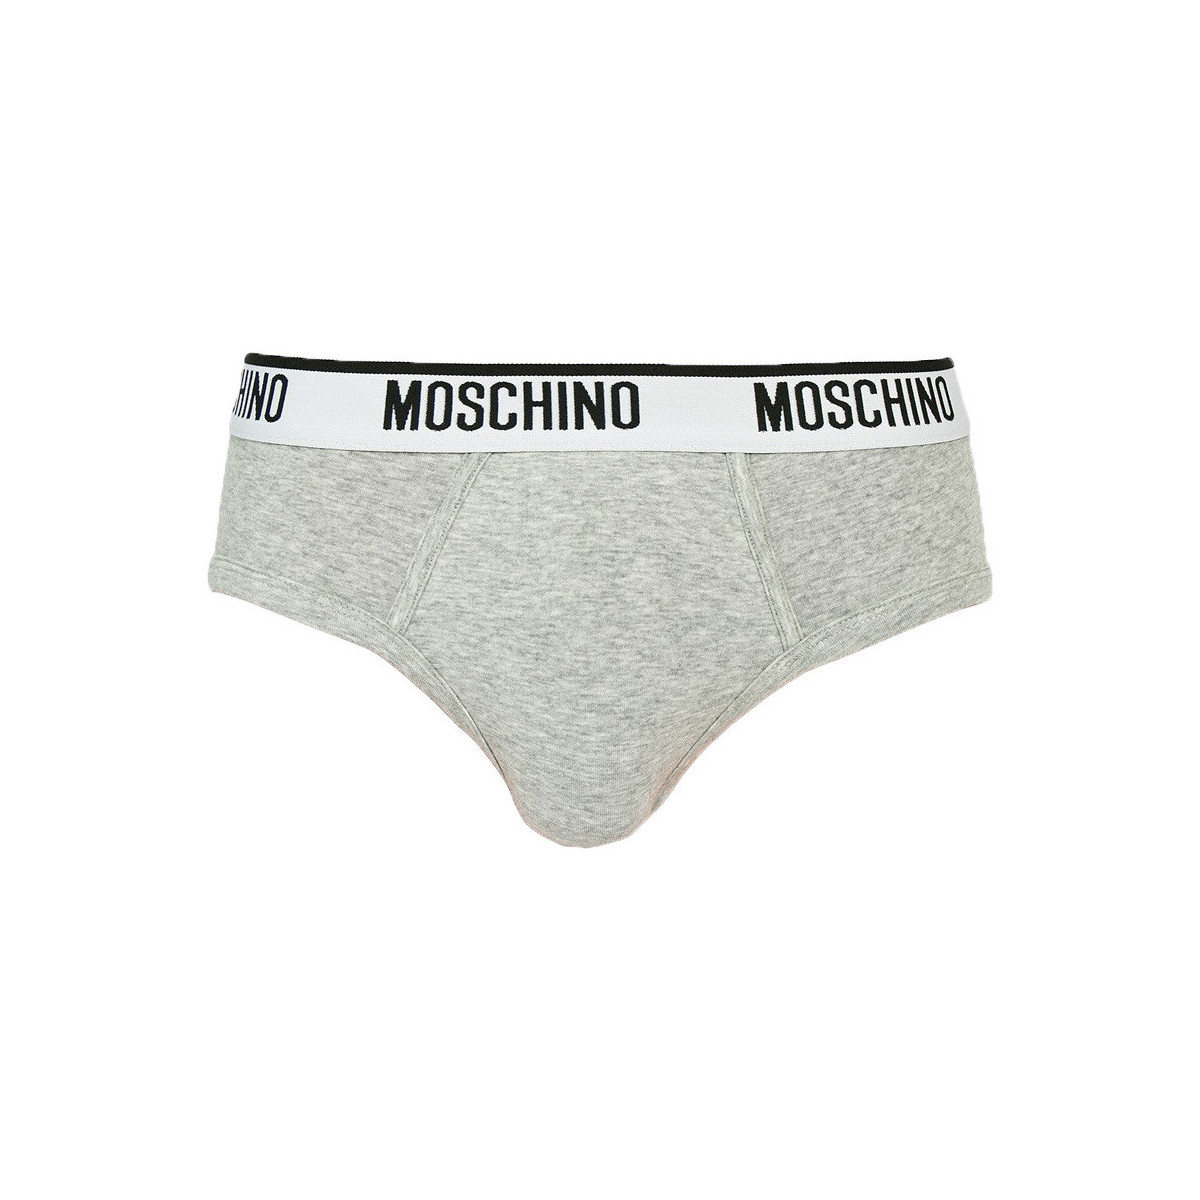 Moschino Mens Brief Underwear (Size XL, 40-42) - Grey